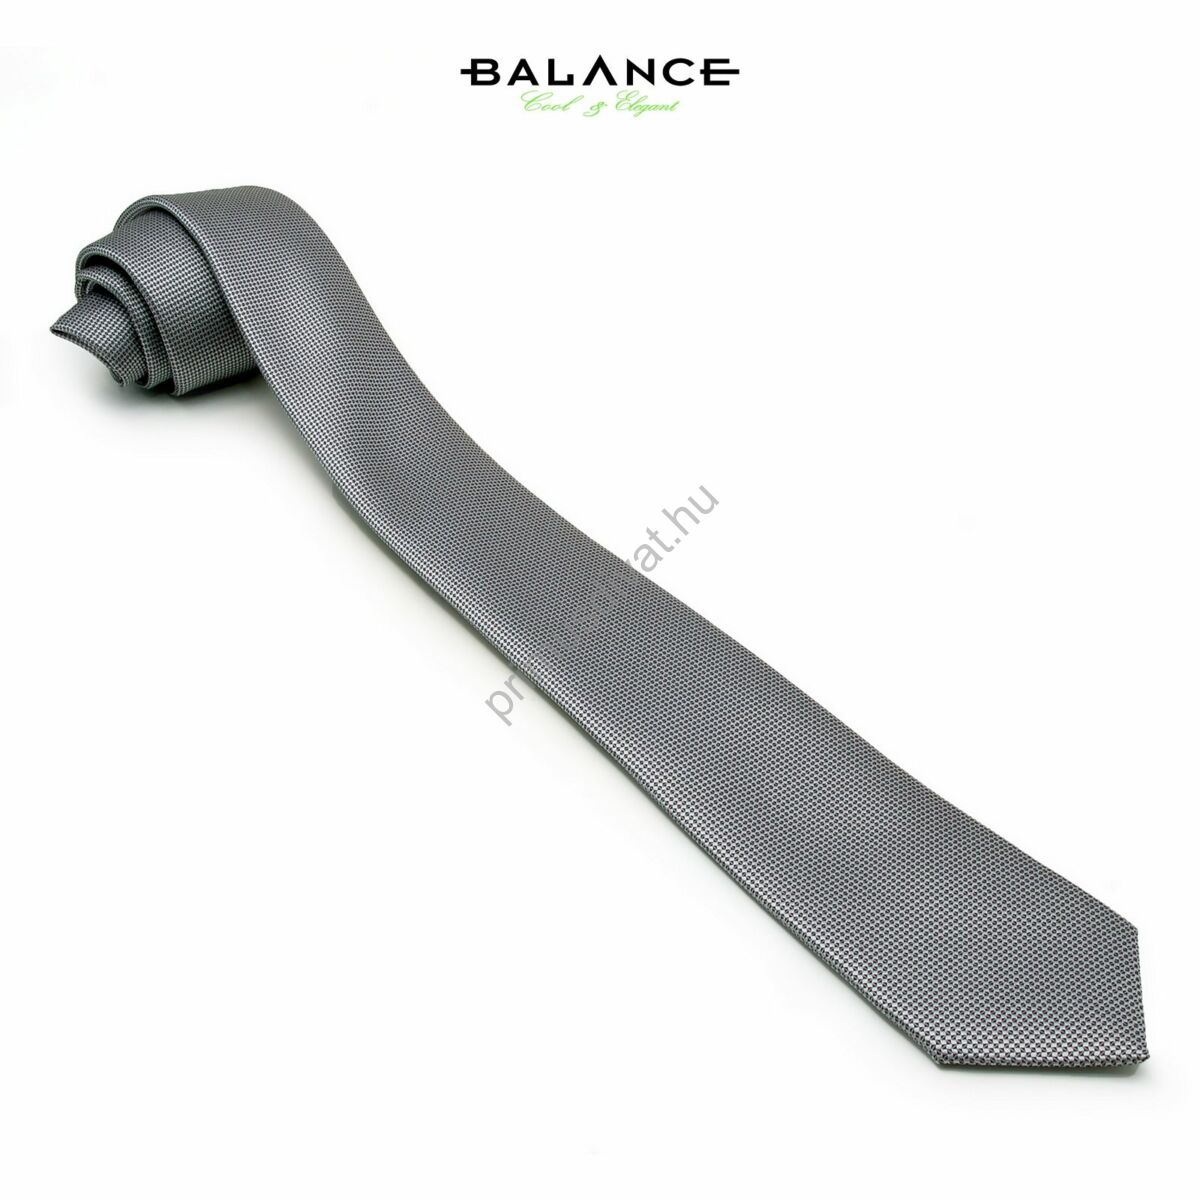 Balance apró fekete pöttyös, anyagában szövött mintás ezüstszürke keskeny selyem nyakkendő